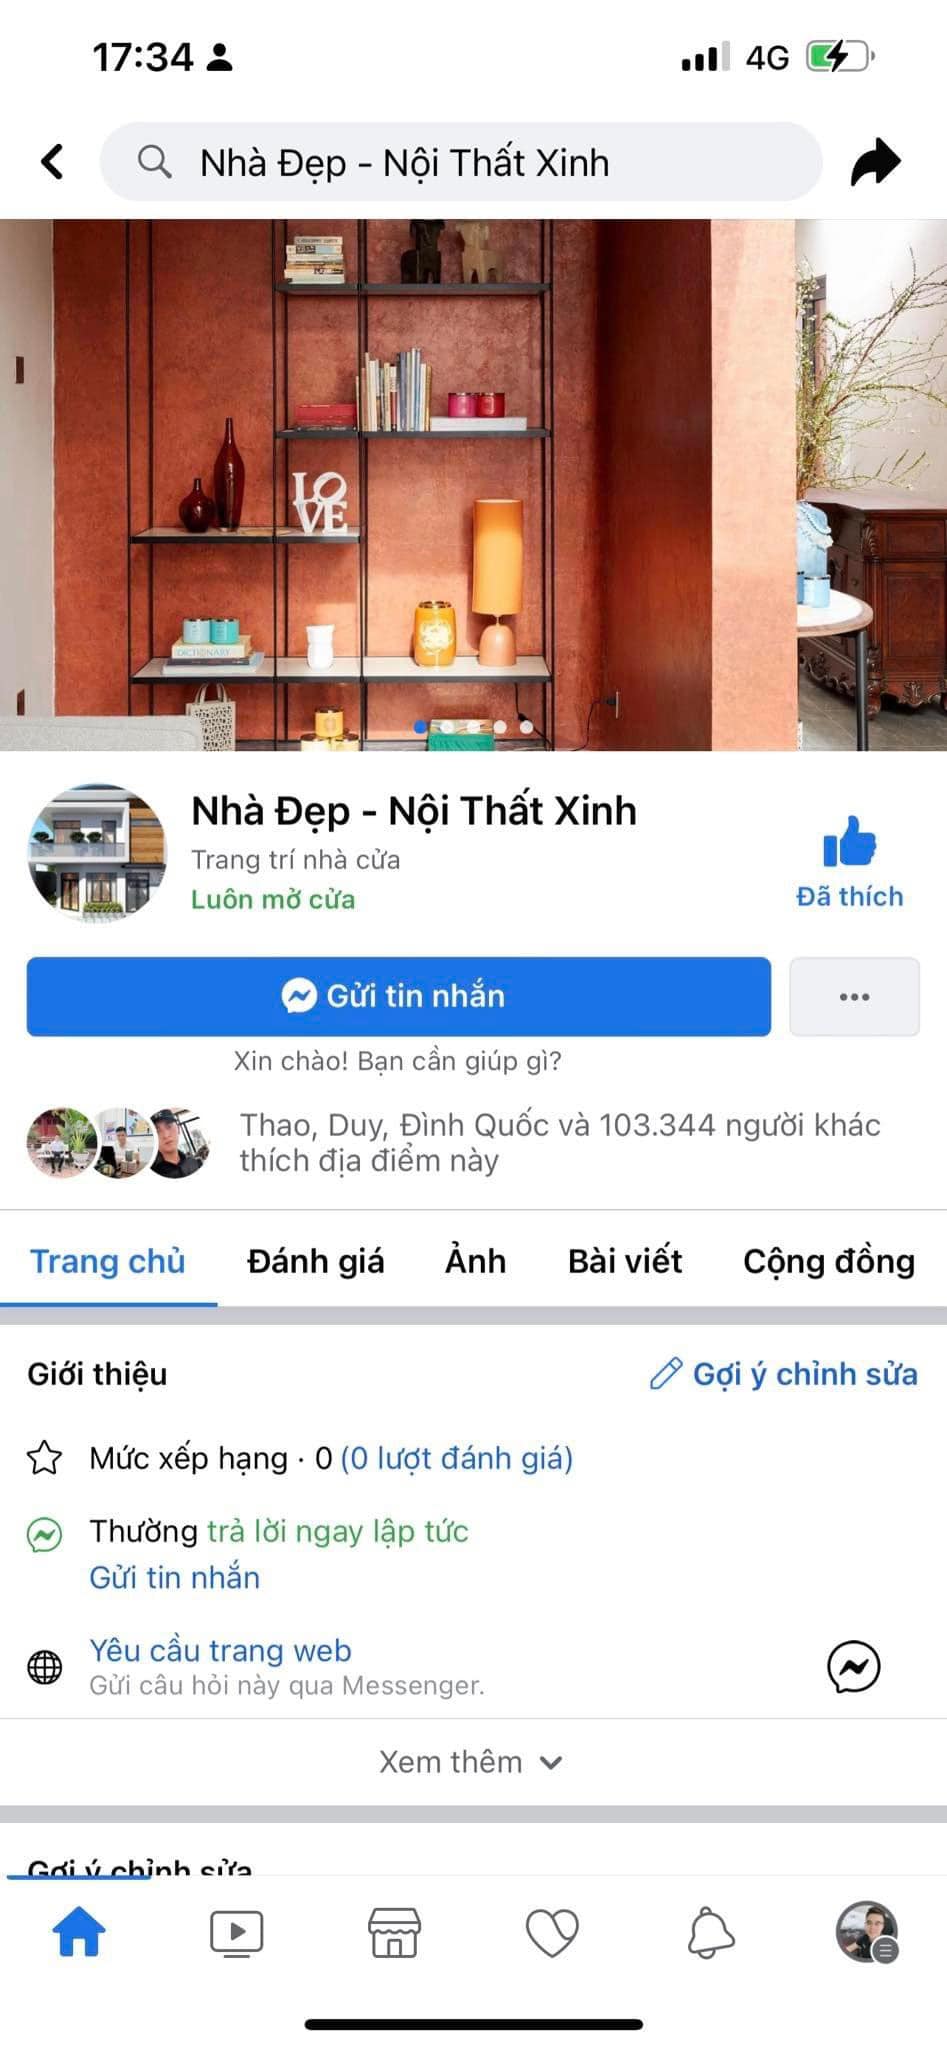 Fanpage Facebook 100k like Nhà Đẹp Nội Thất Xinh Hỗ trợ thay tên, xây dựng phát triển thương hiệu Fanpage